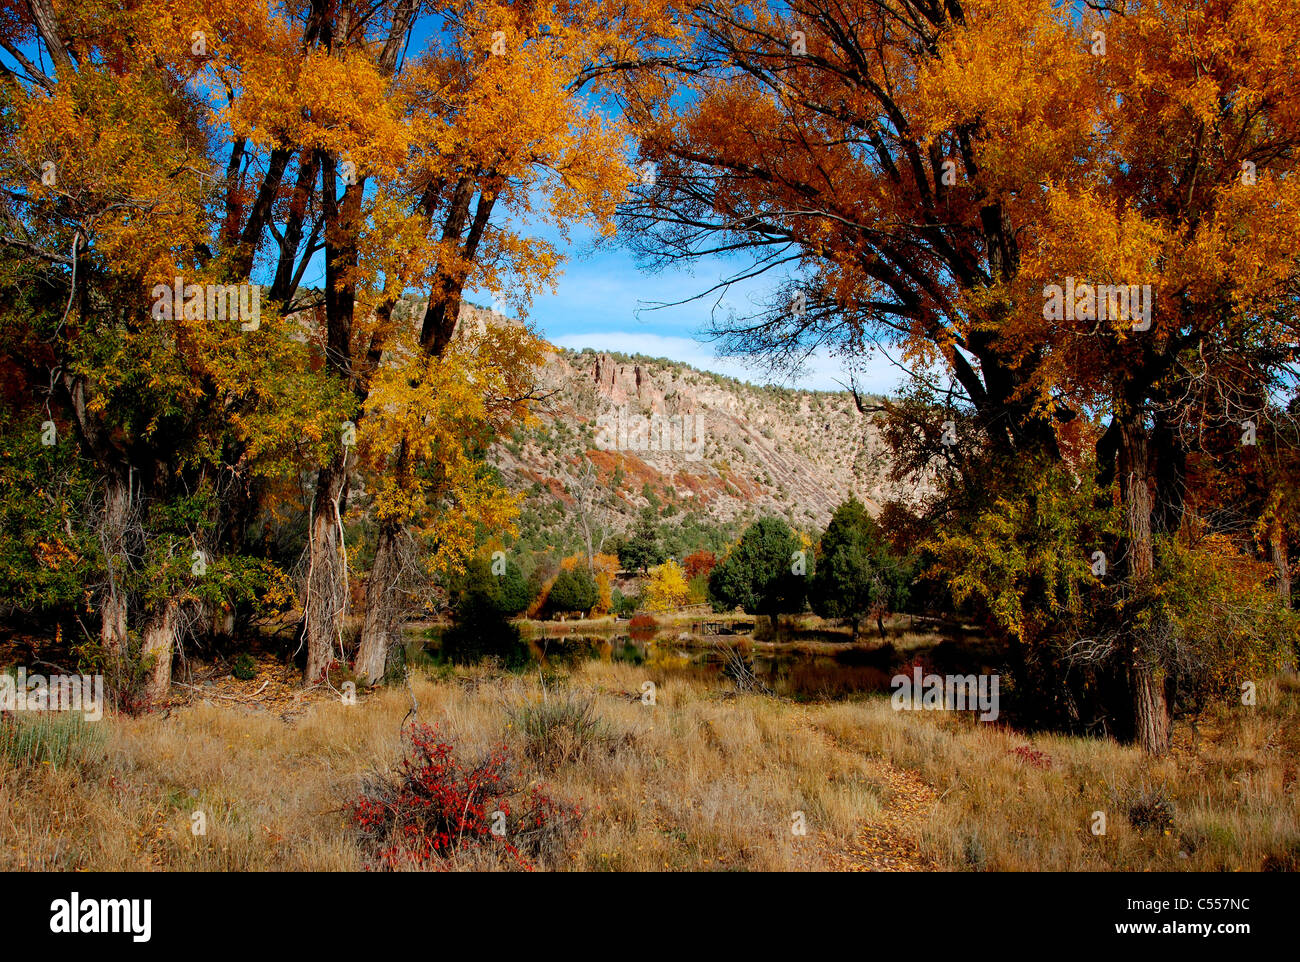 USA, Colorado, Ridgway, autumn trees Stock Photo